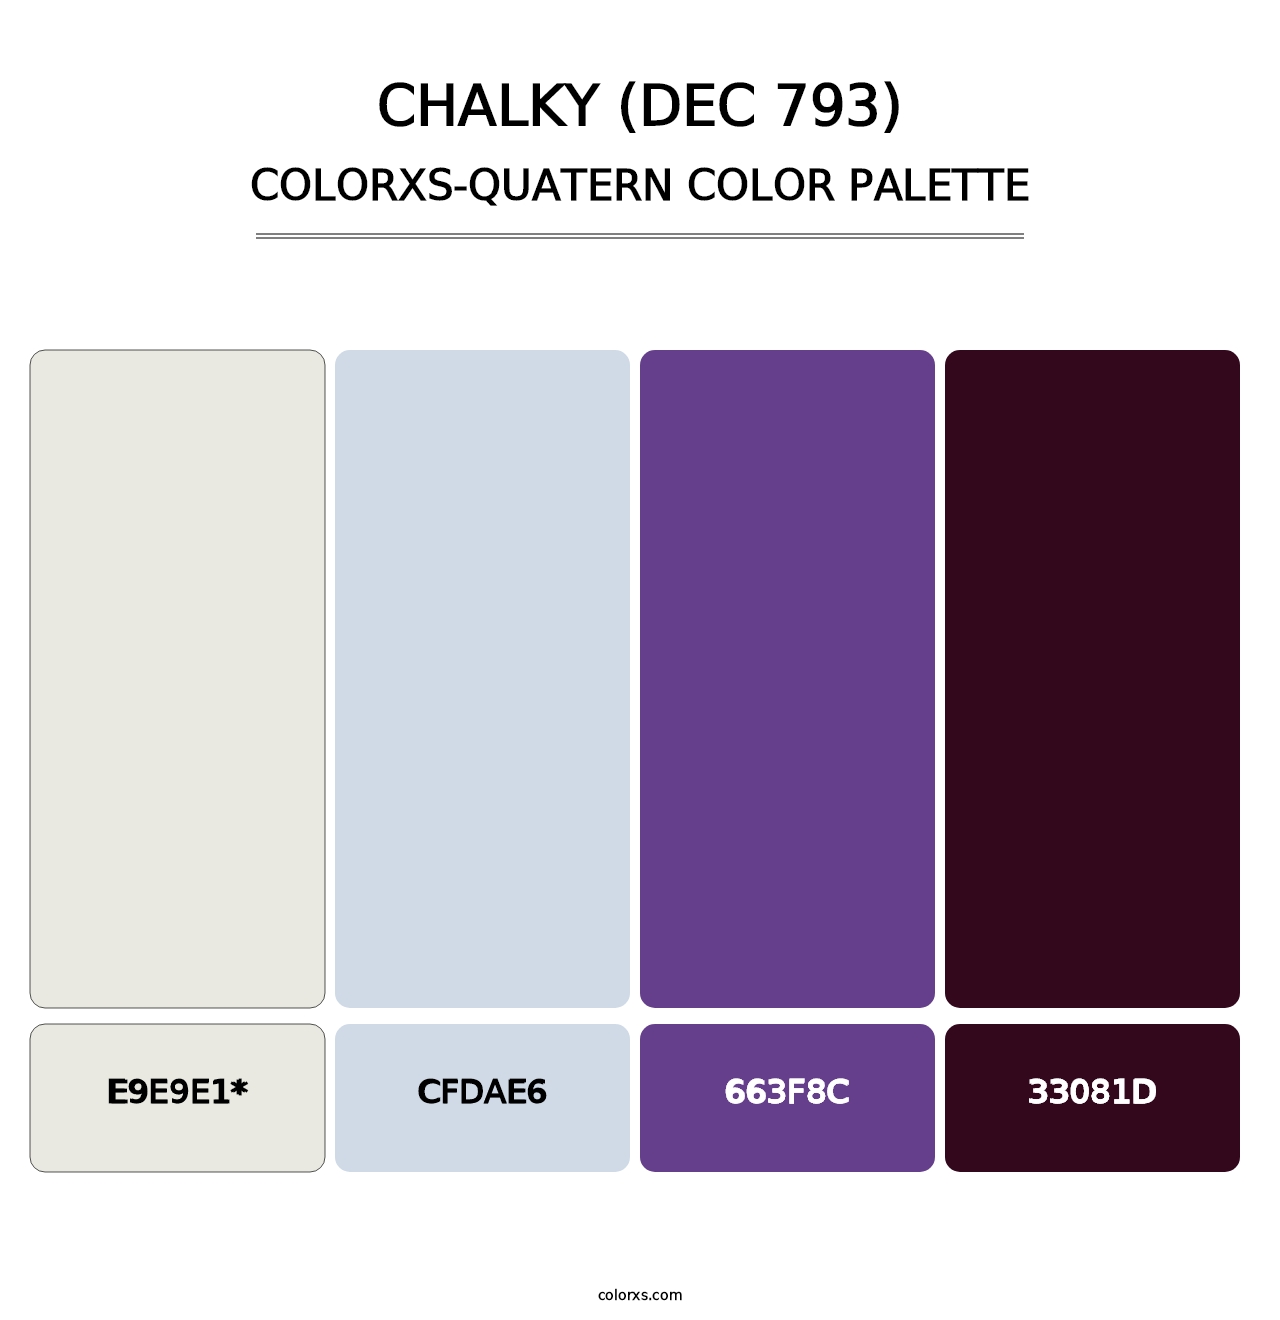 Chalky (DEC 793) - Colorxs Quatern Palette